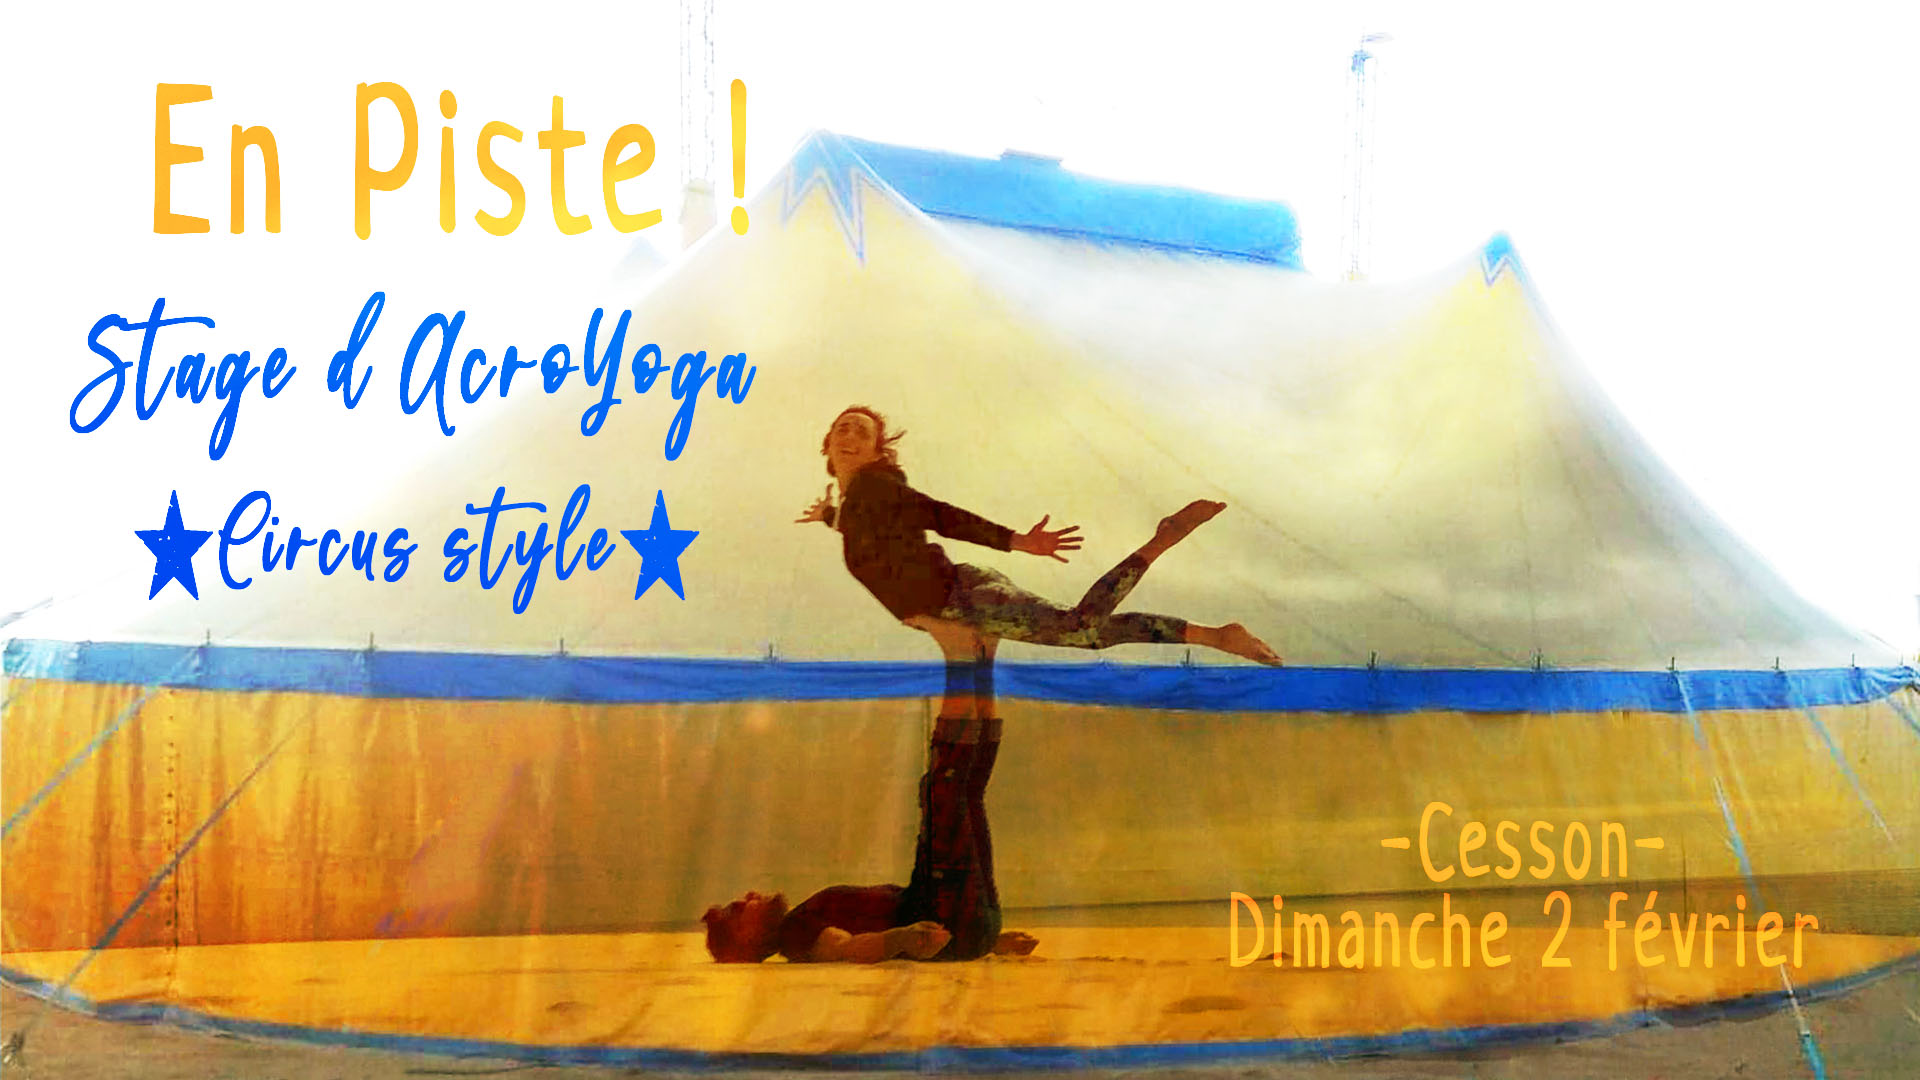 Stage d'acroyoga à l'école de cirque En Piste! de Cesson-Sévigné - Rennes Métropole